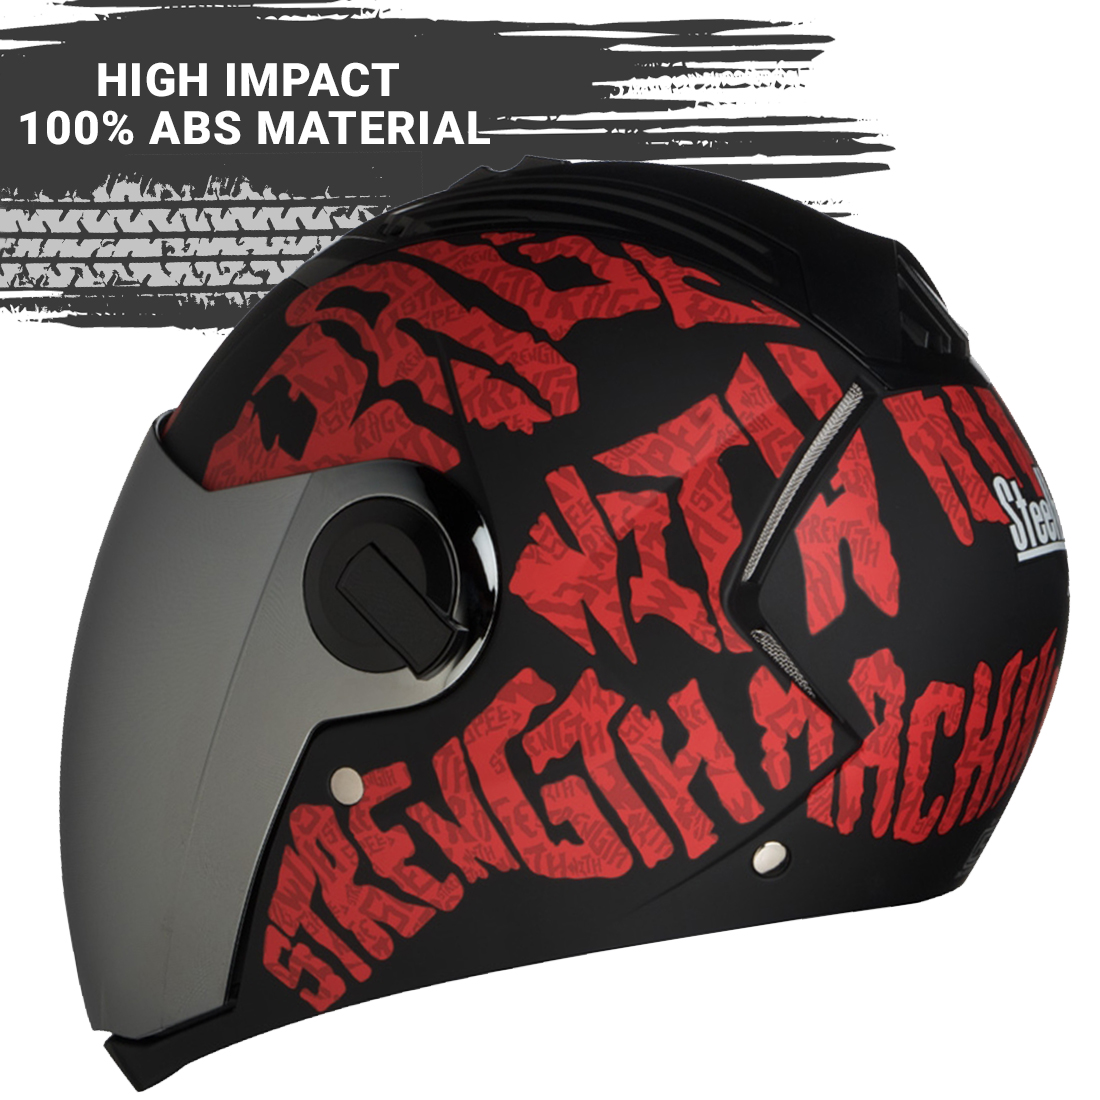 Steelbird SBA-2 Strength Stylish Bike Full Face Helmet (Matt Black Red With Chrome Silver Visor)